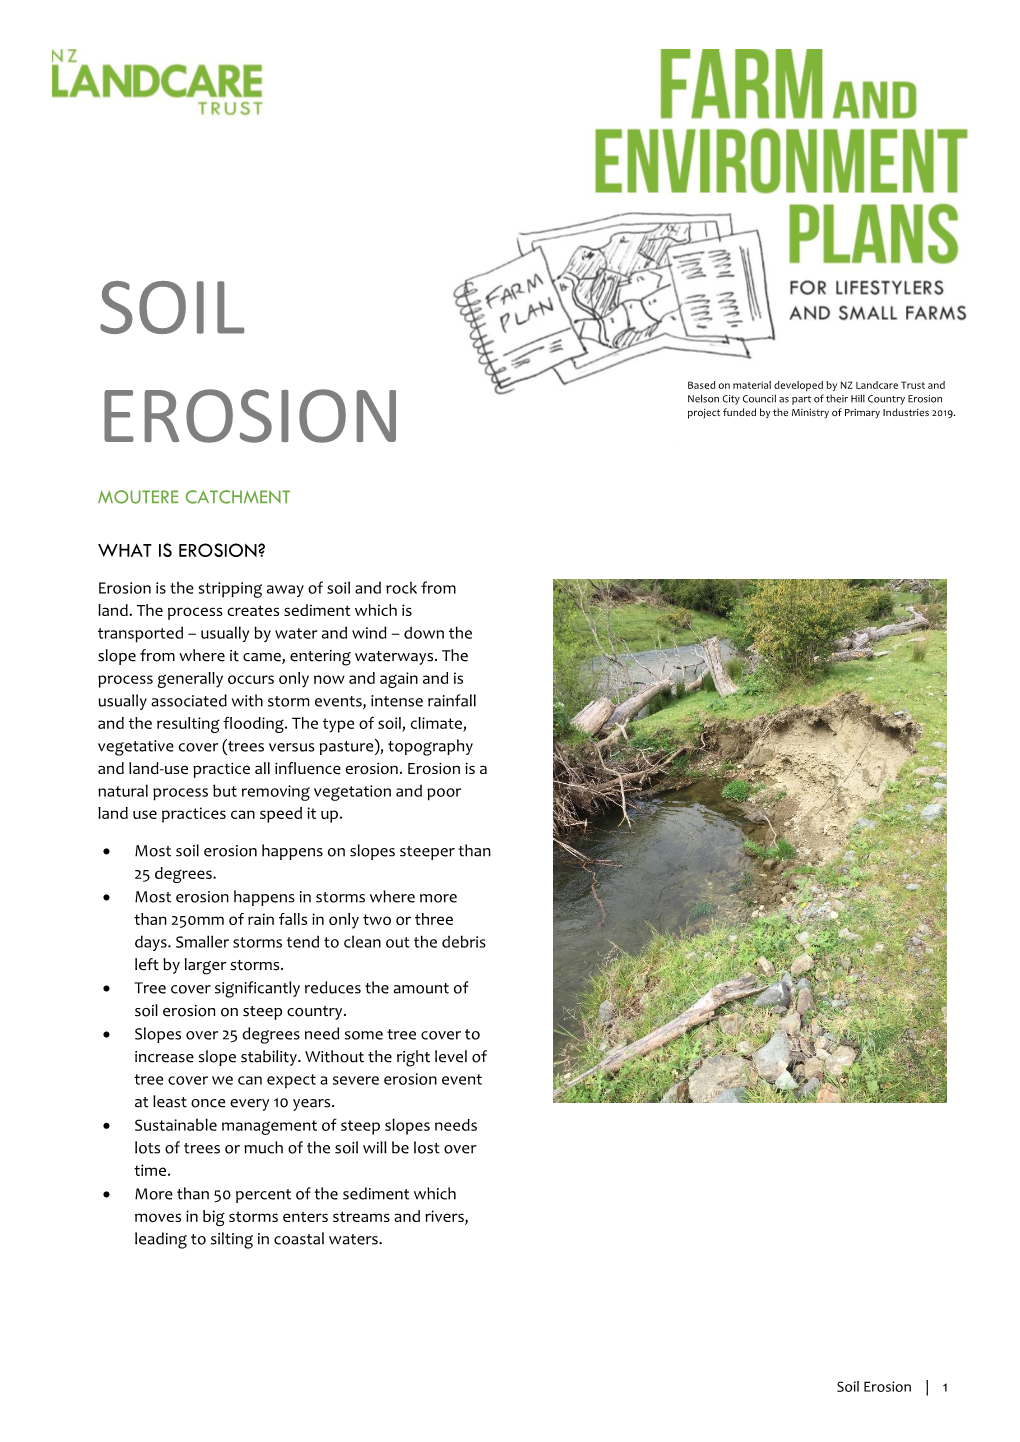 Soil Erosion Happens on Slopes Steeper Than 25 Degrees